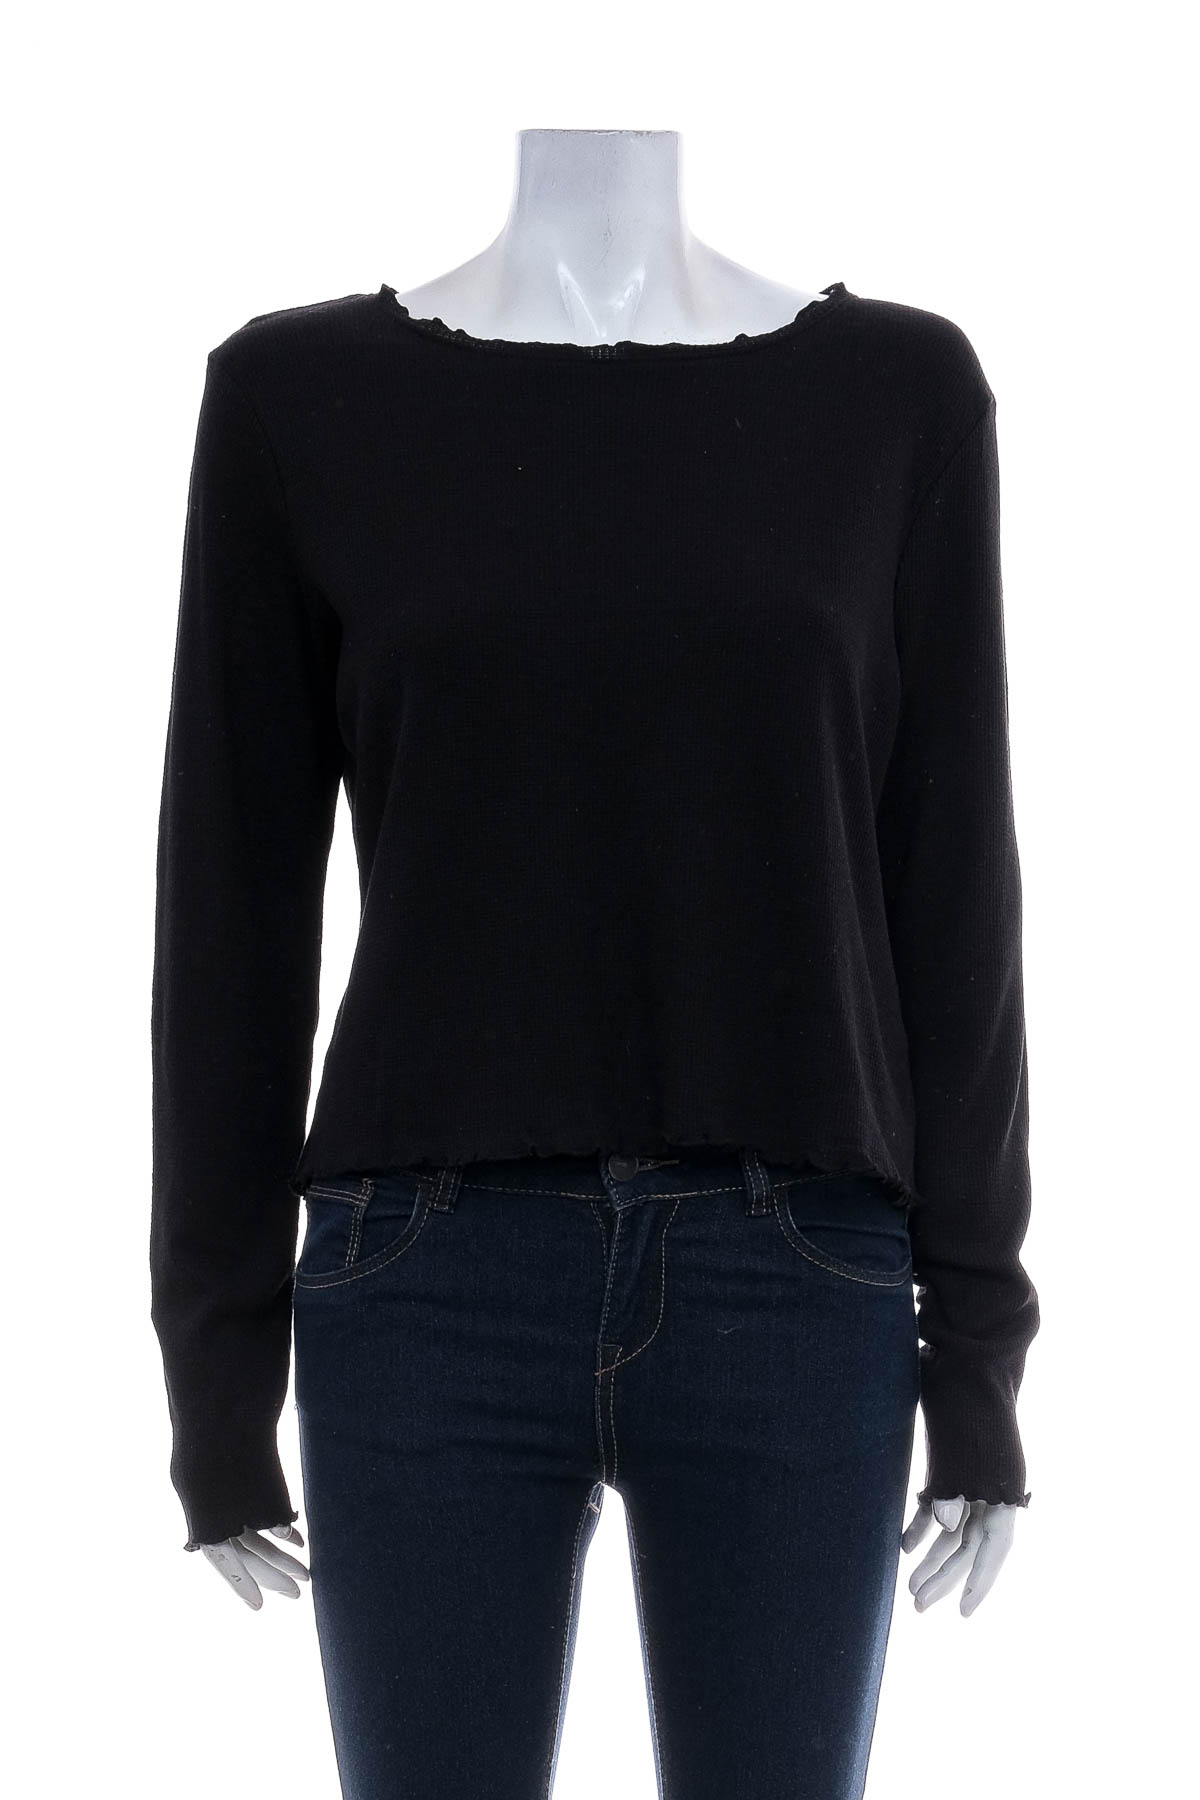 Women's sweater - Jean Pascale - 0